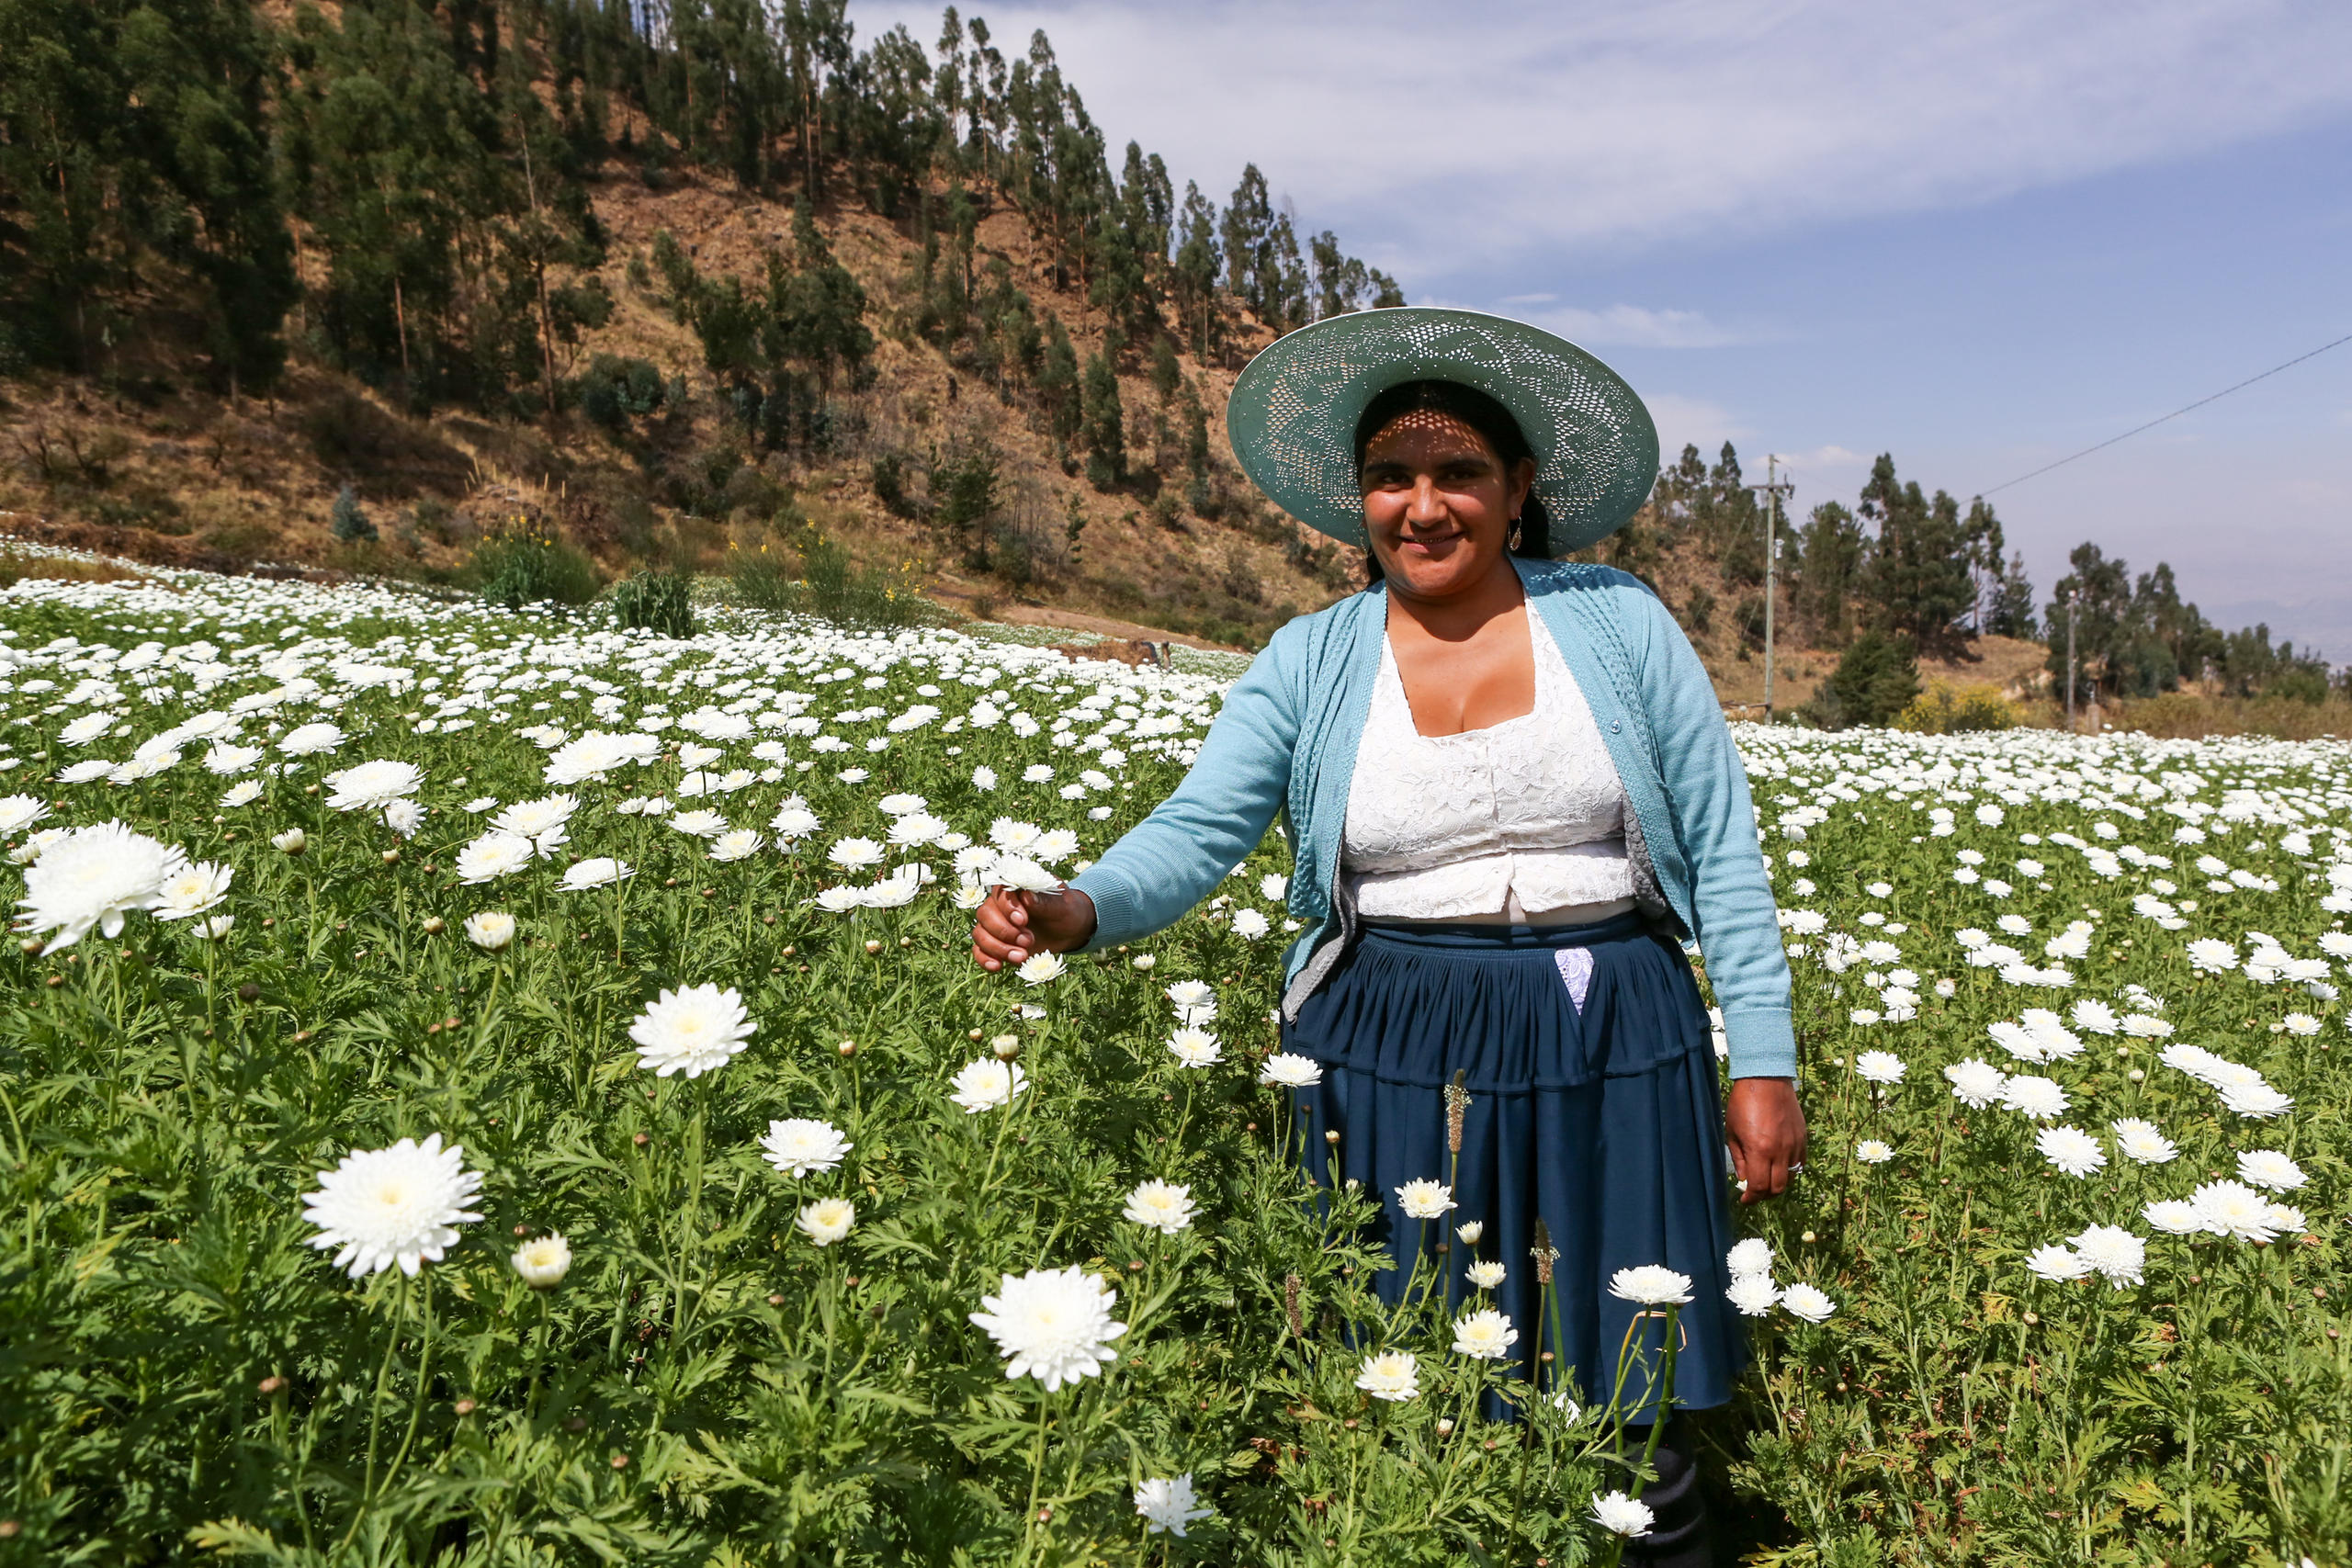 Blumenzüchterin mit Hut steht in einem grünen Feld voller weisser Blumen